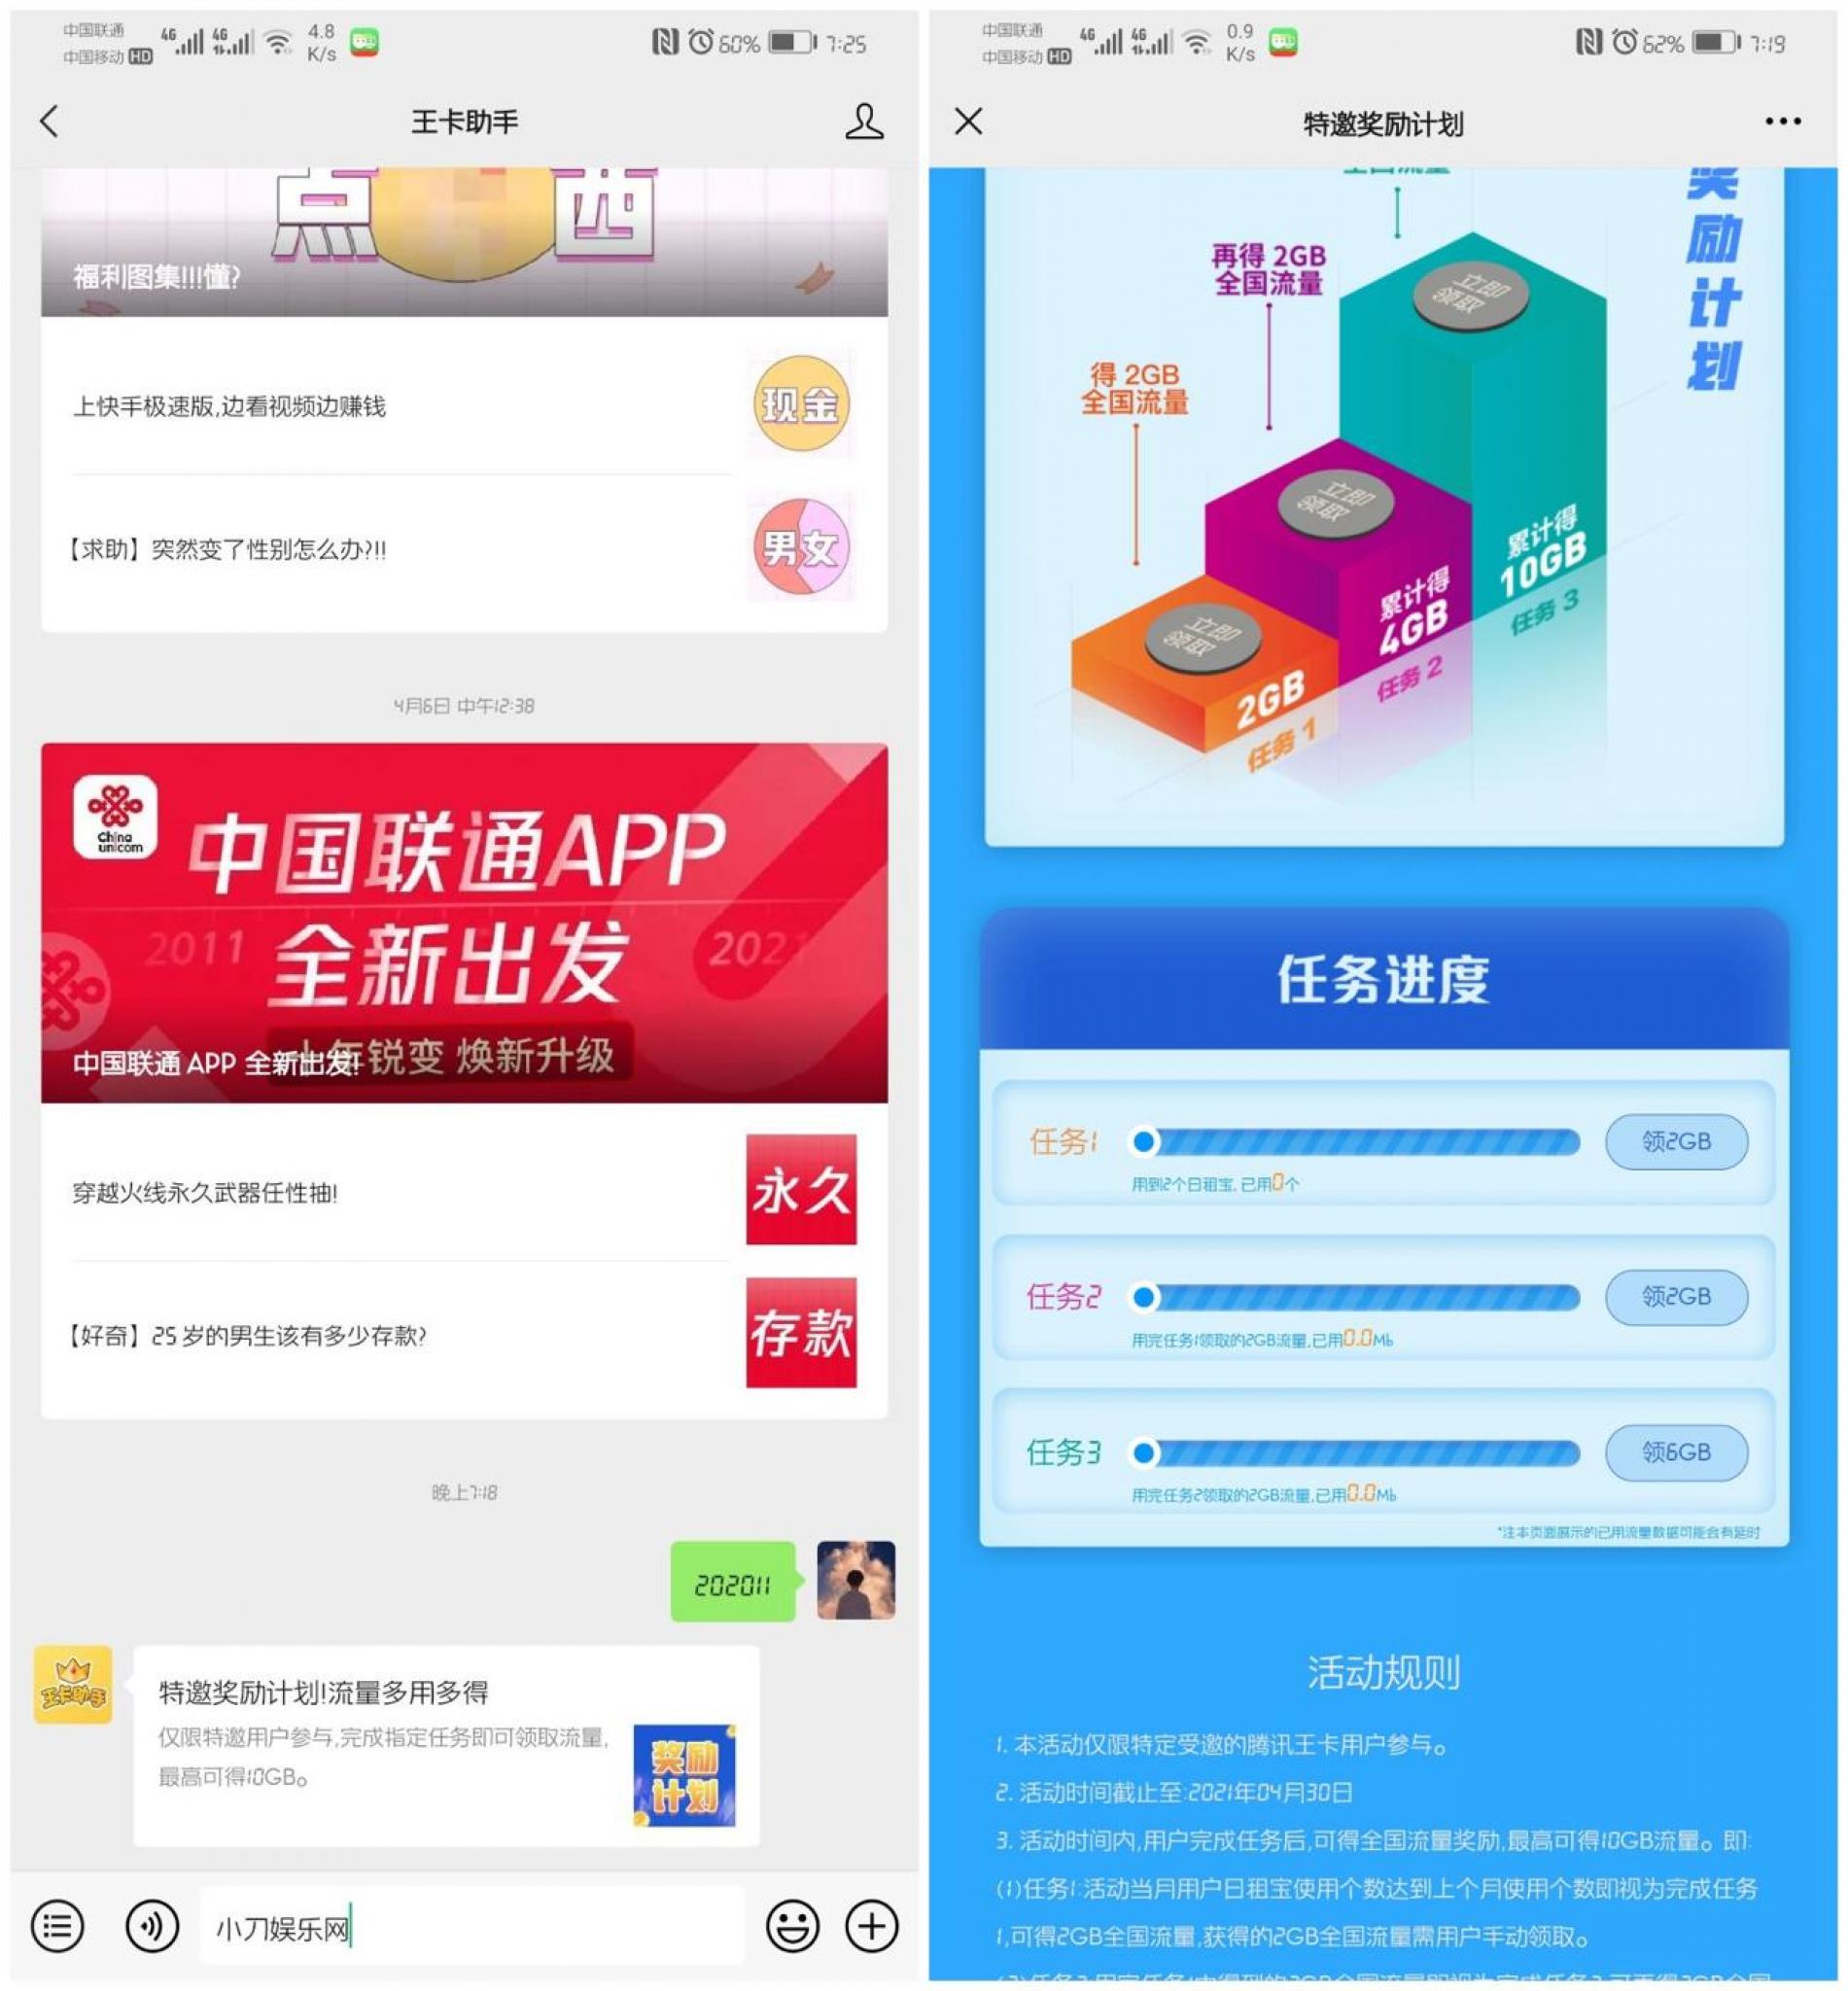 腾讯王卡特邀用户领10G流量-未来资源网